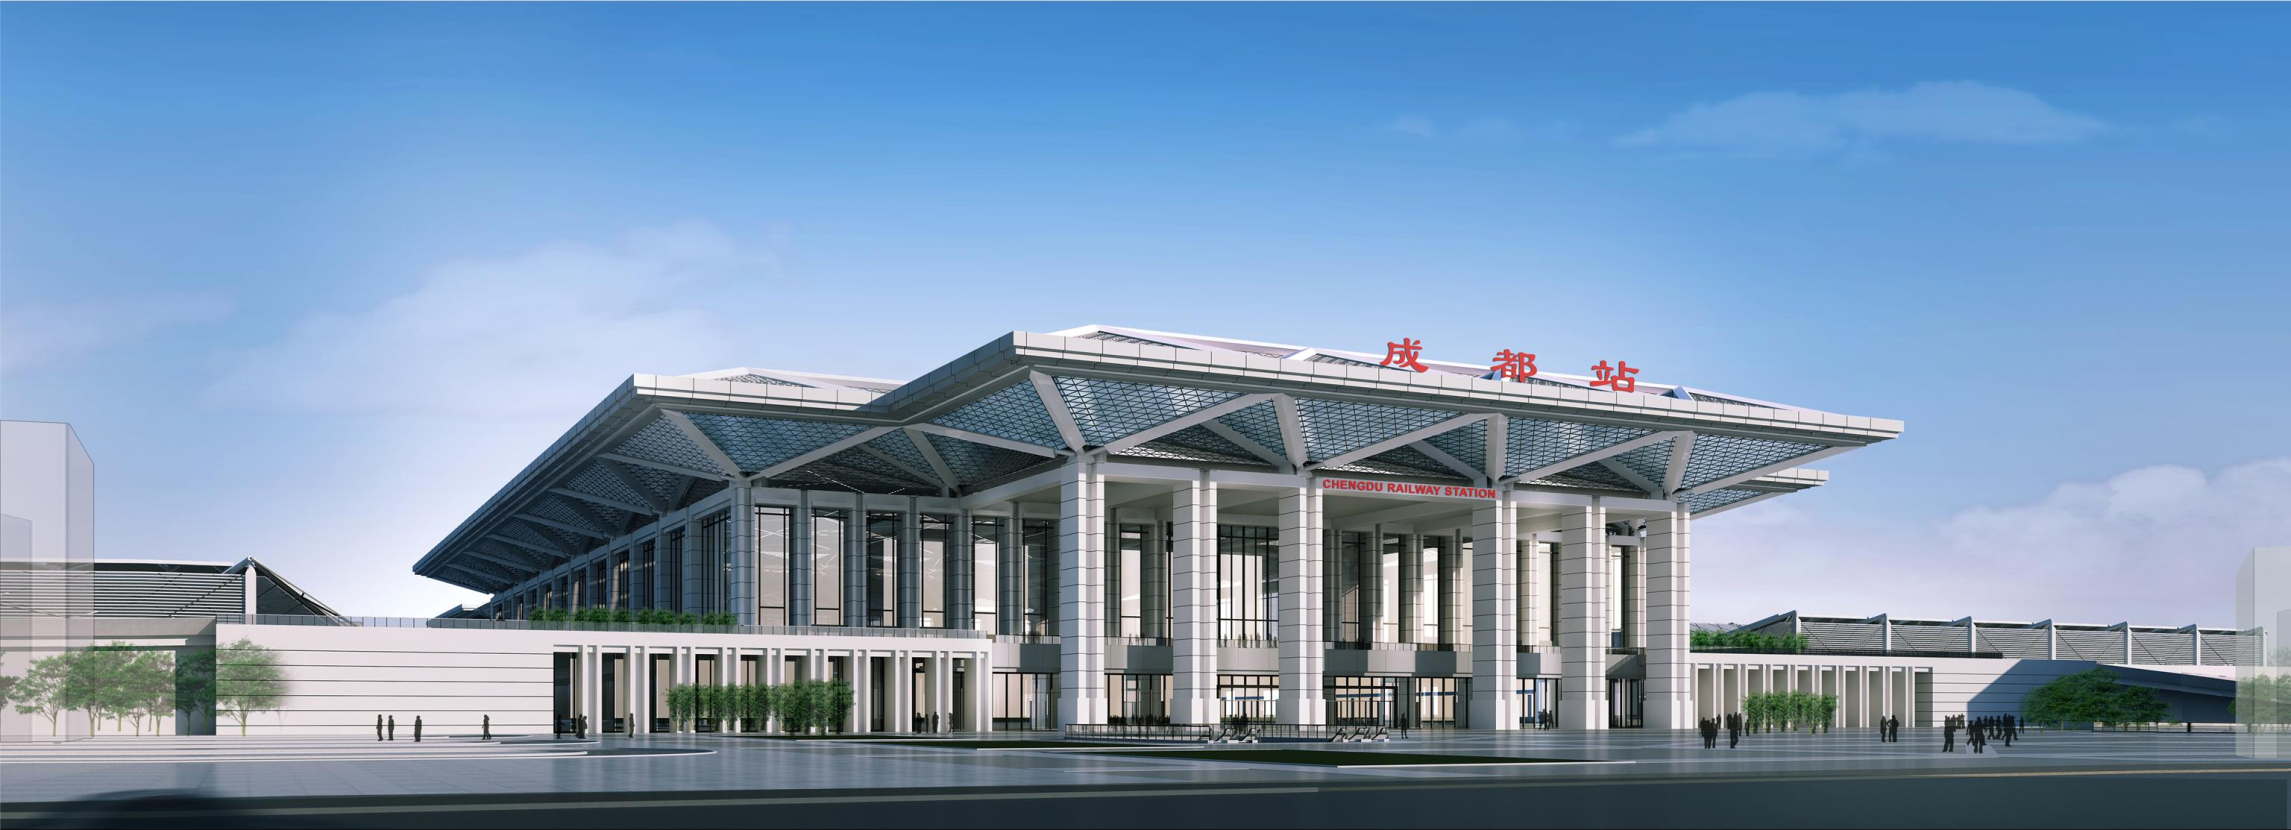 火车北站扩能改造配套工程综合客运枢纽工程子项目工程